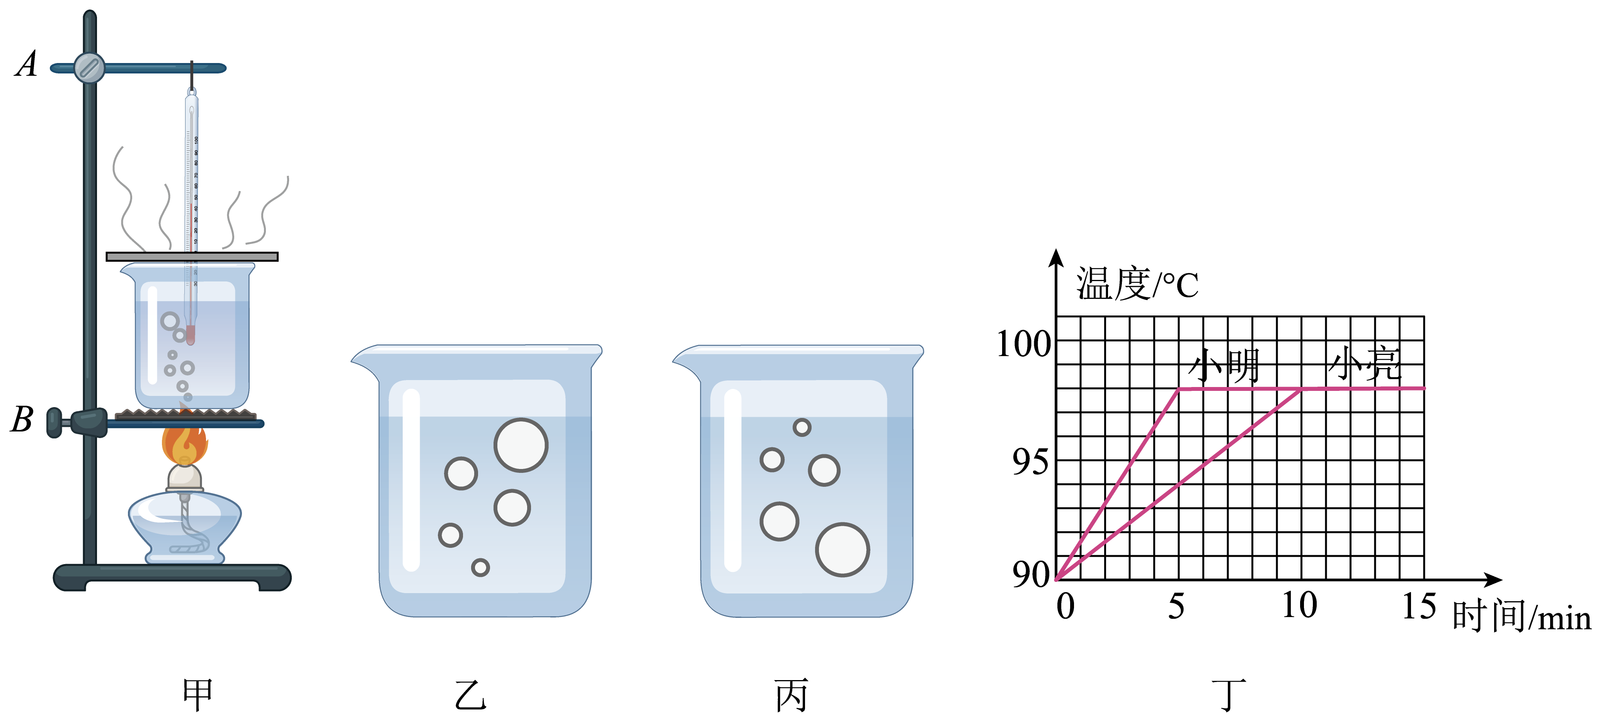 小明利用如图所示的实验装置观察水的沸腾现象